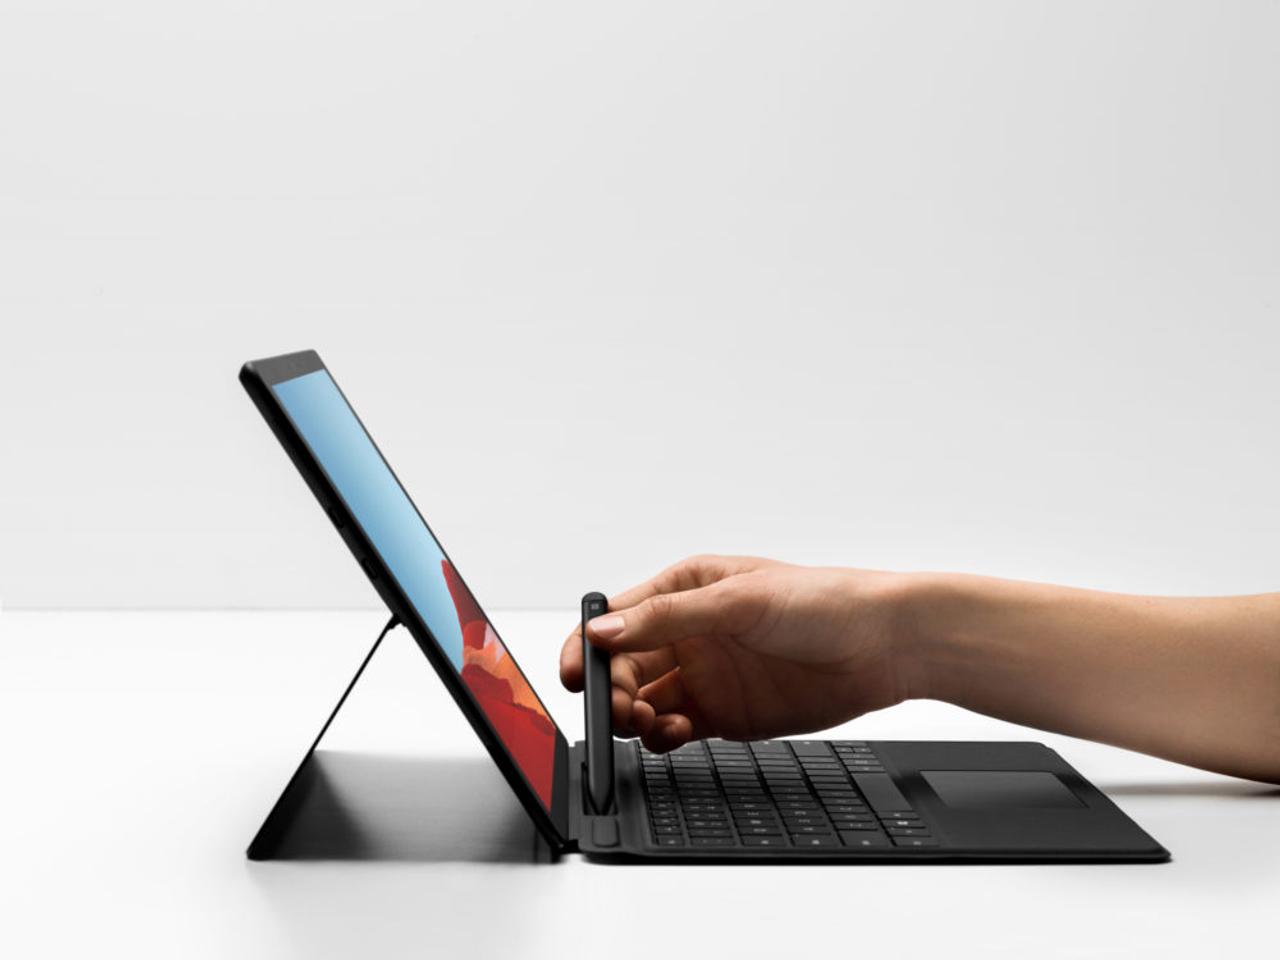 新2-in-1 PC｢Surface Pro X｣発表。10万円強でLTE接続可能は最強感ありすぎ #MicrosoftEvent